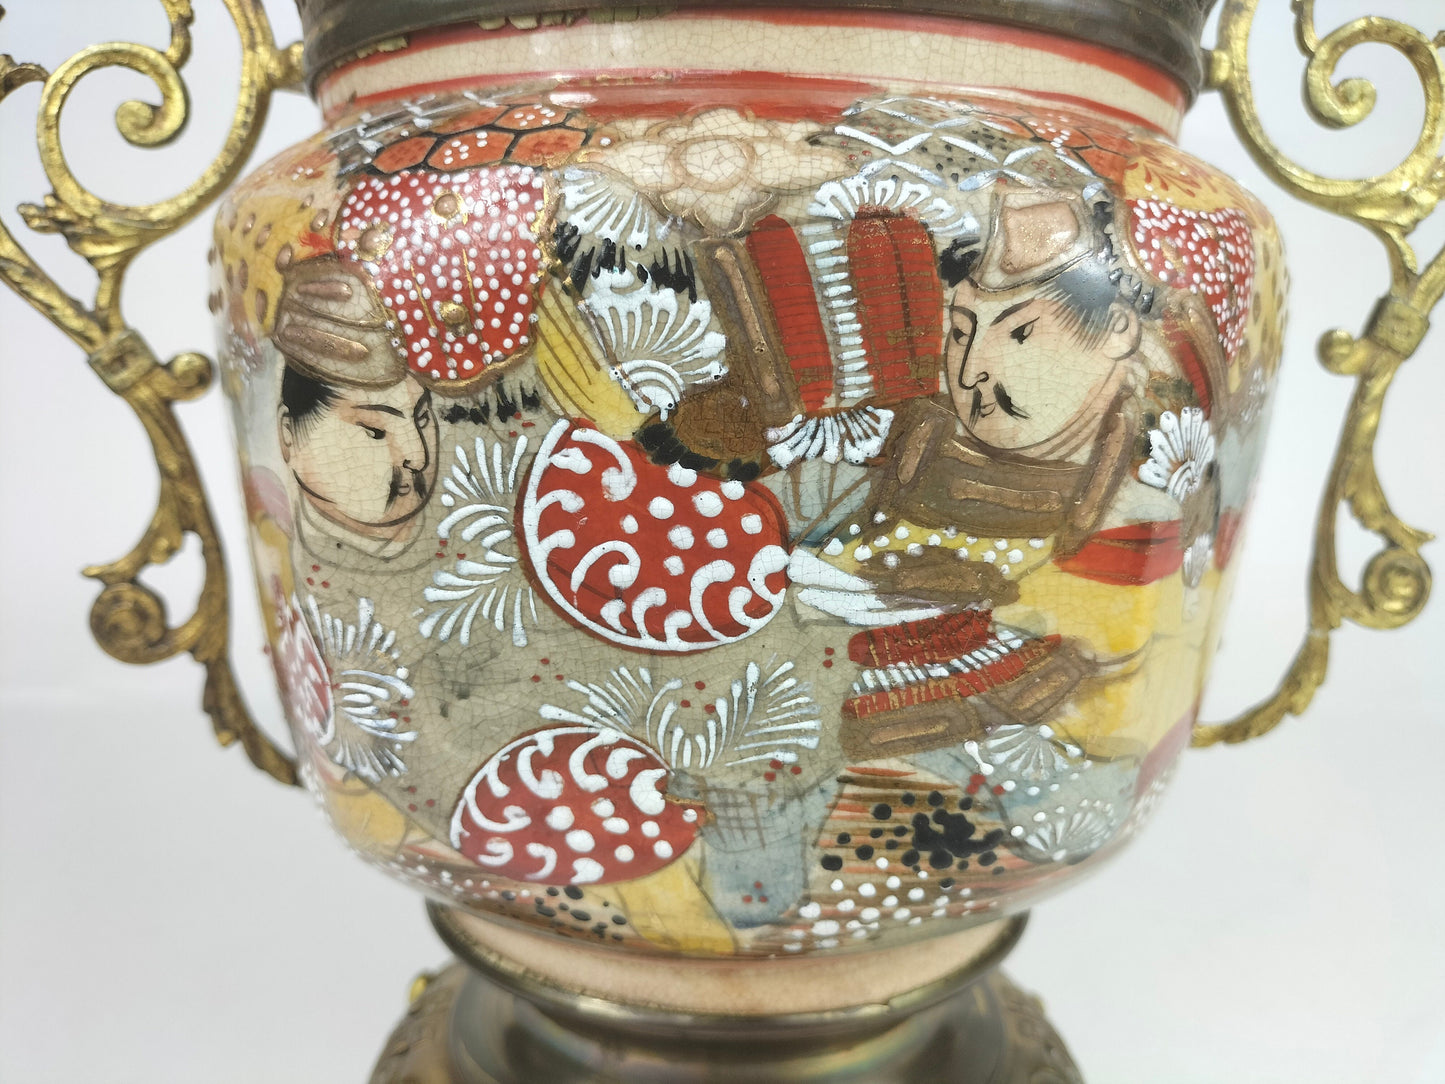 جرة ساتسوما يابانية عتيقة مزينة بالنحاس المطلي بالذهب // القرن التاسع عشر - فترة ميجي